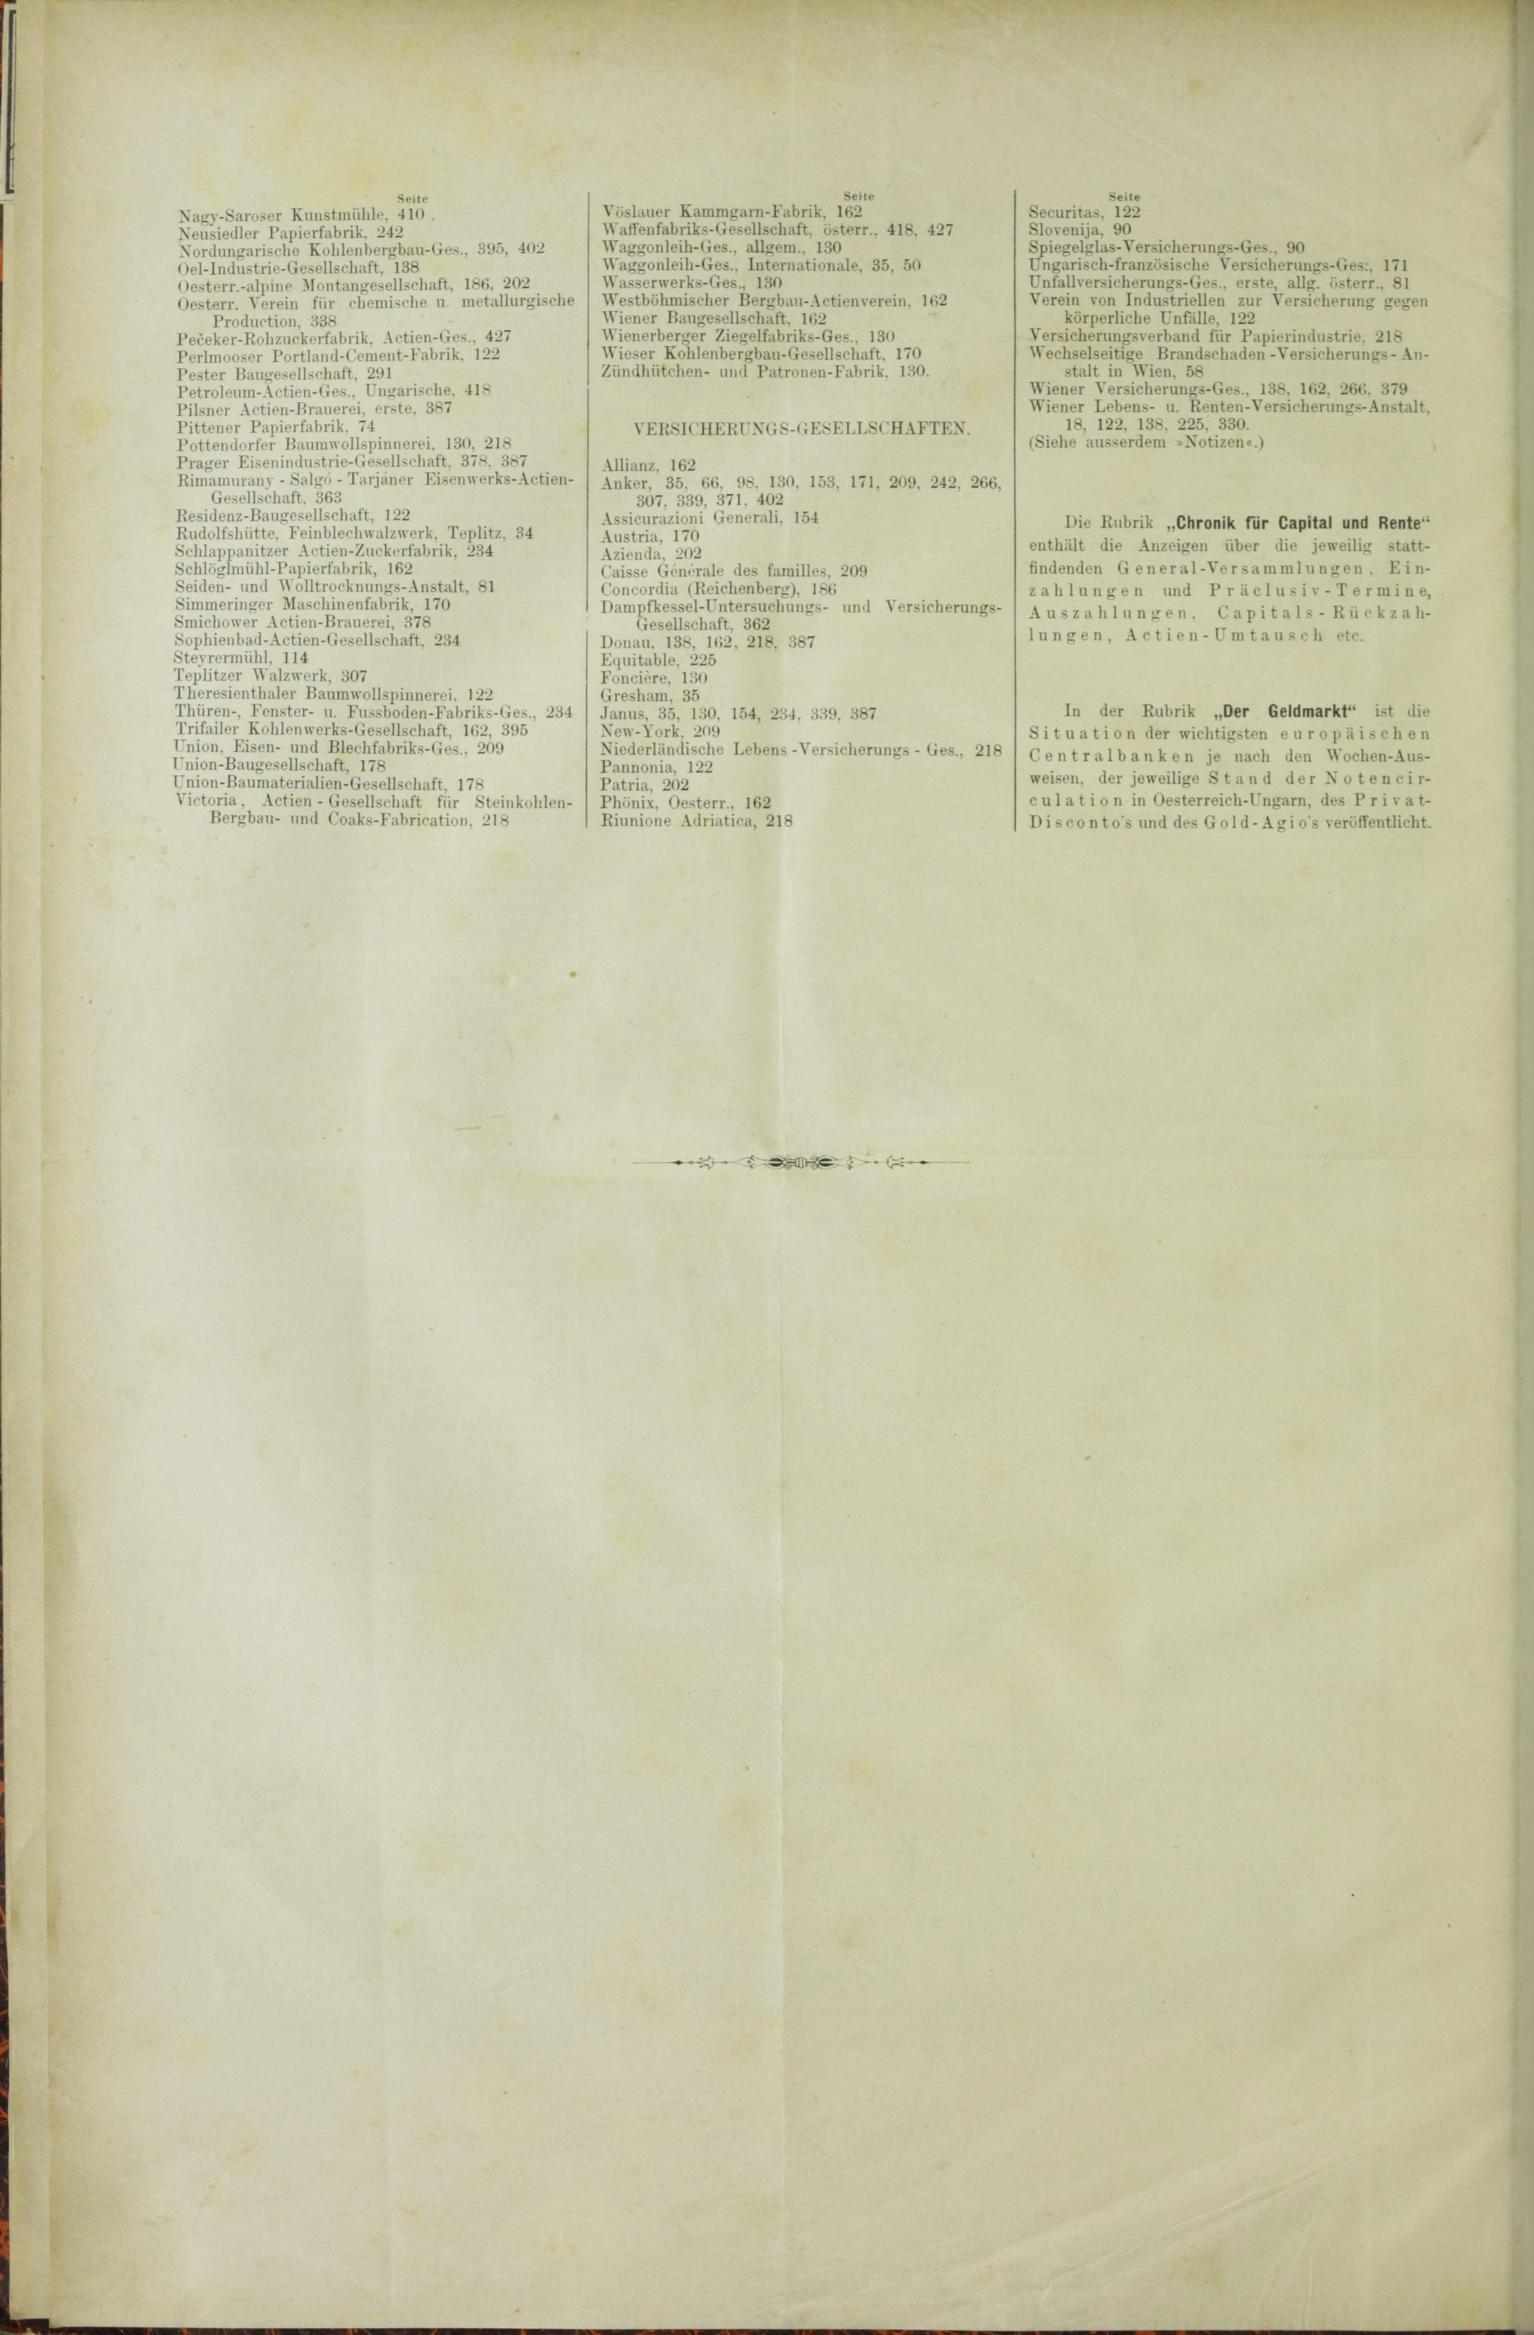 Der Tresor 30.07.1885 - Seite 12